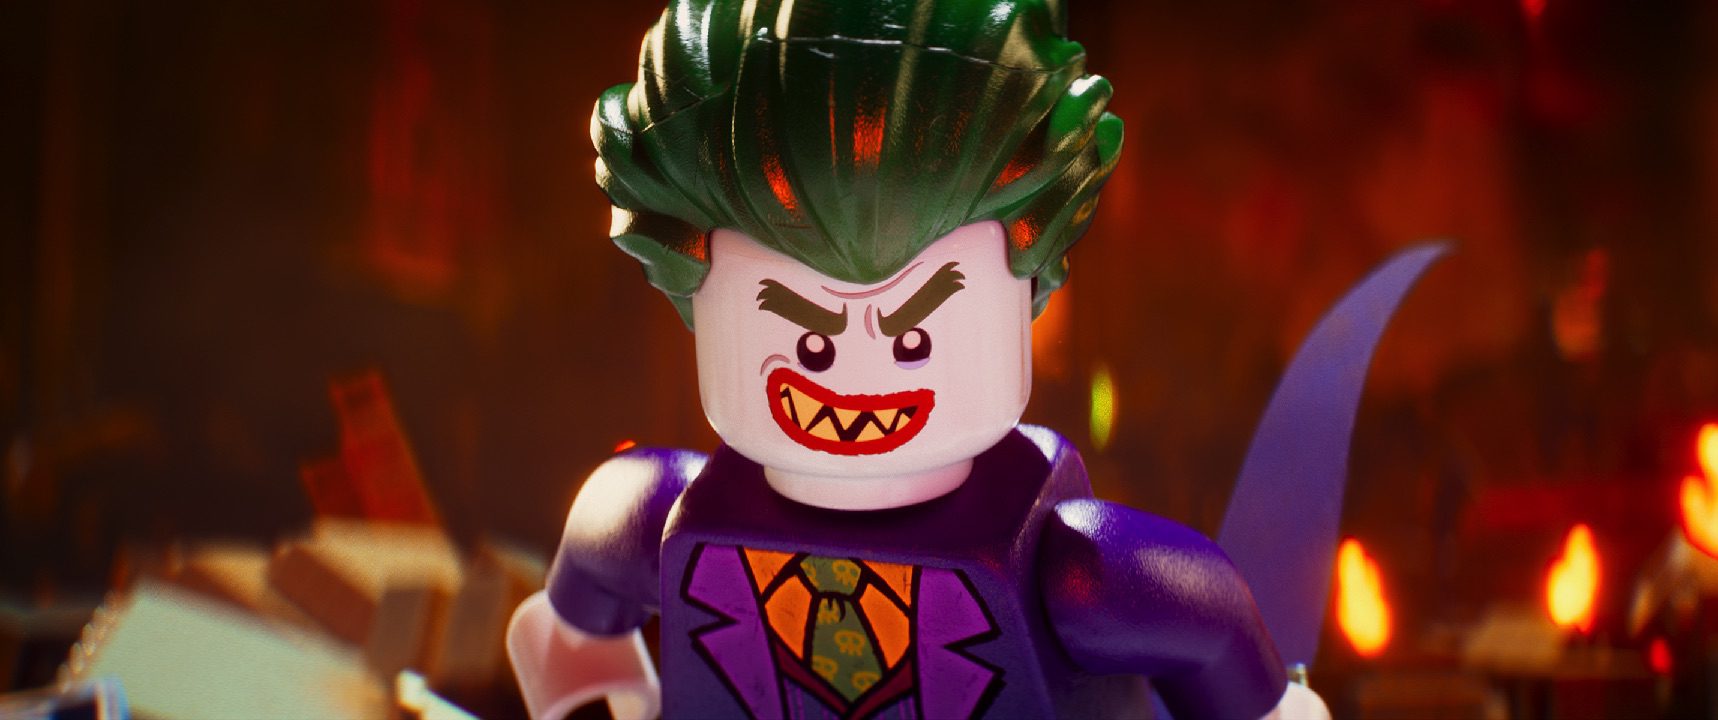 Joker (Zach Galifianakis) in The Lego Batman Movie. (Warner Bros Pictures)